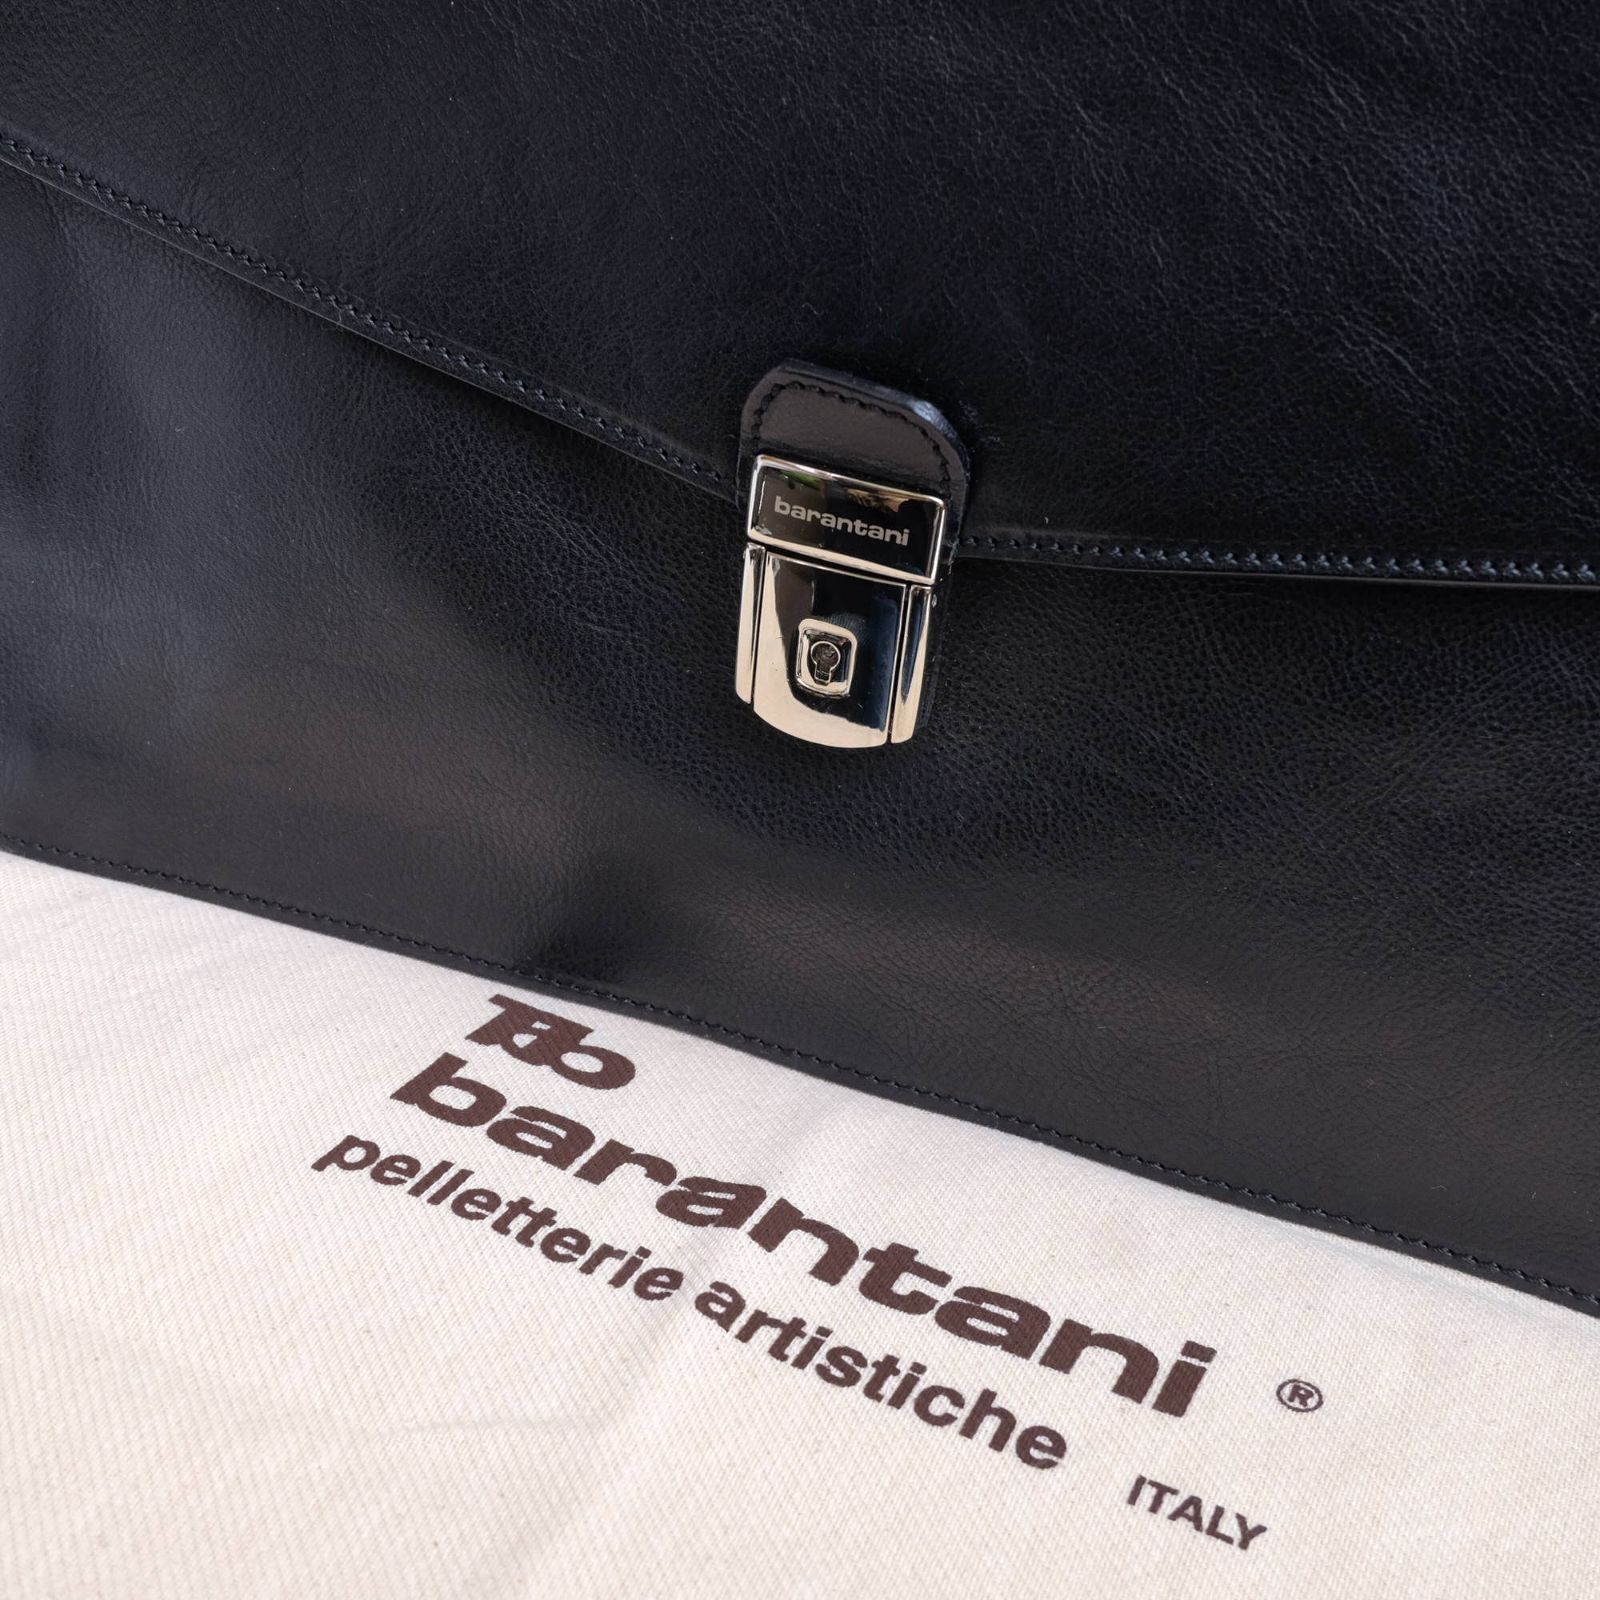 バランターニ／barantani バッグ ブリーフケース ビジネスバッグ 鞄